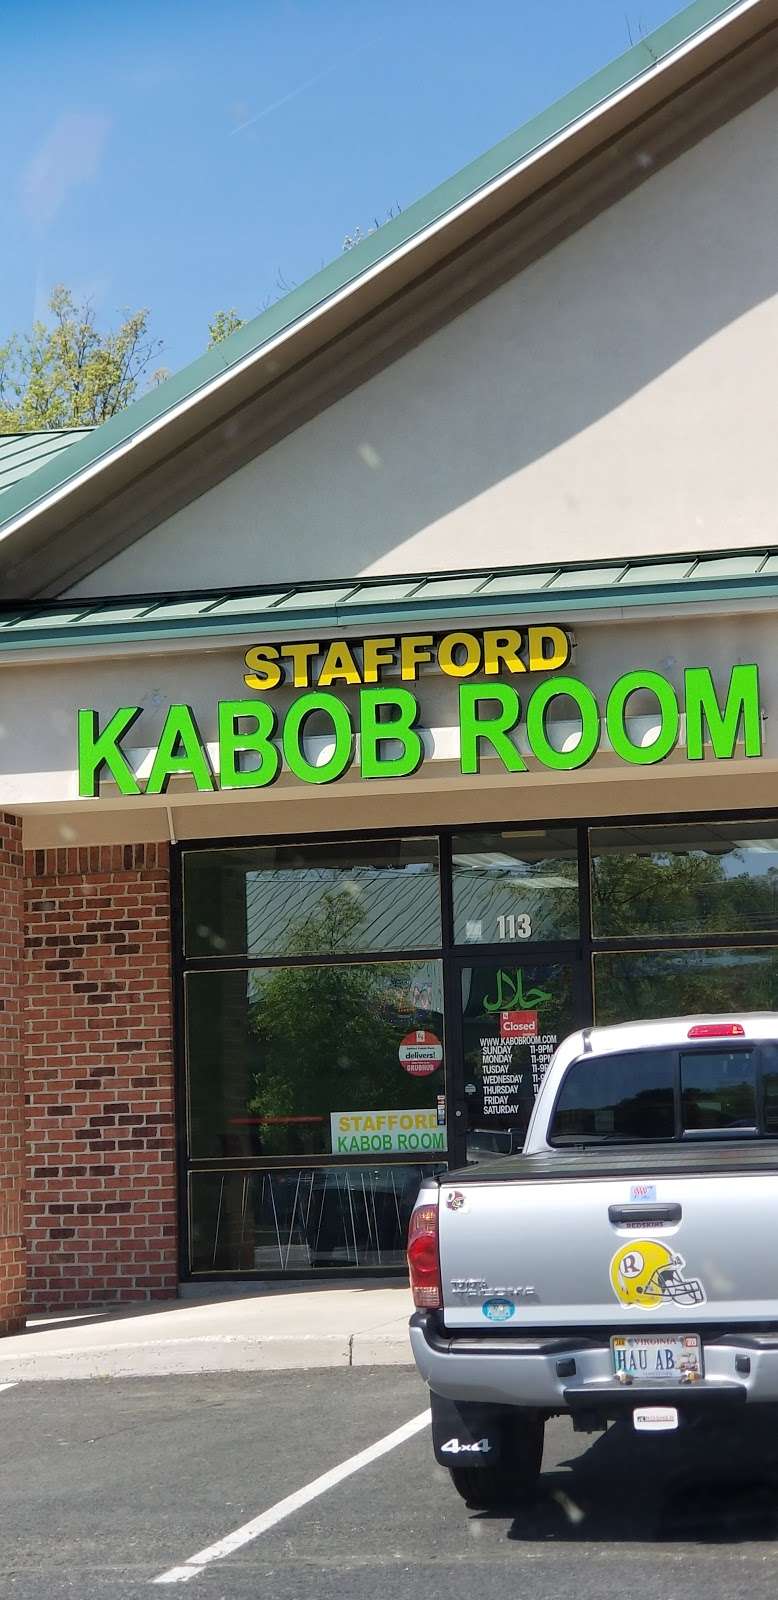 Stafford Kabob Room | Aquia Park Shopping Center, 2777 Jefferson Davis Hwy # 113, Stafford, VA 22554 | Phone: (540) 288-4400